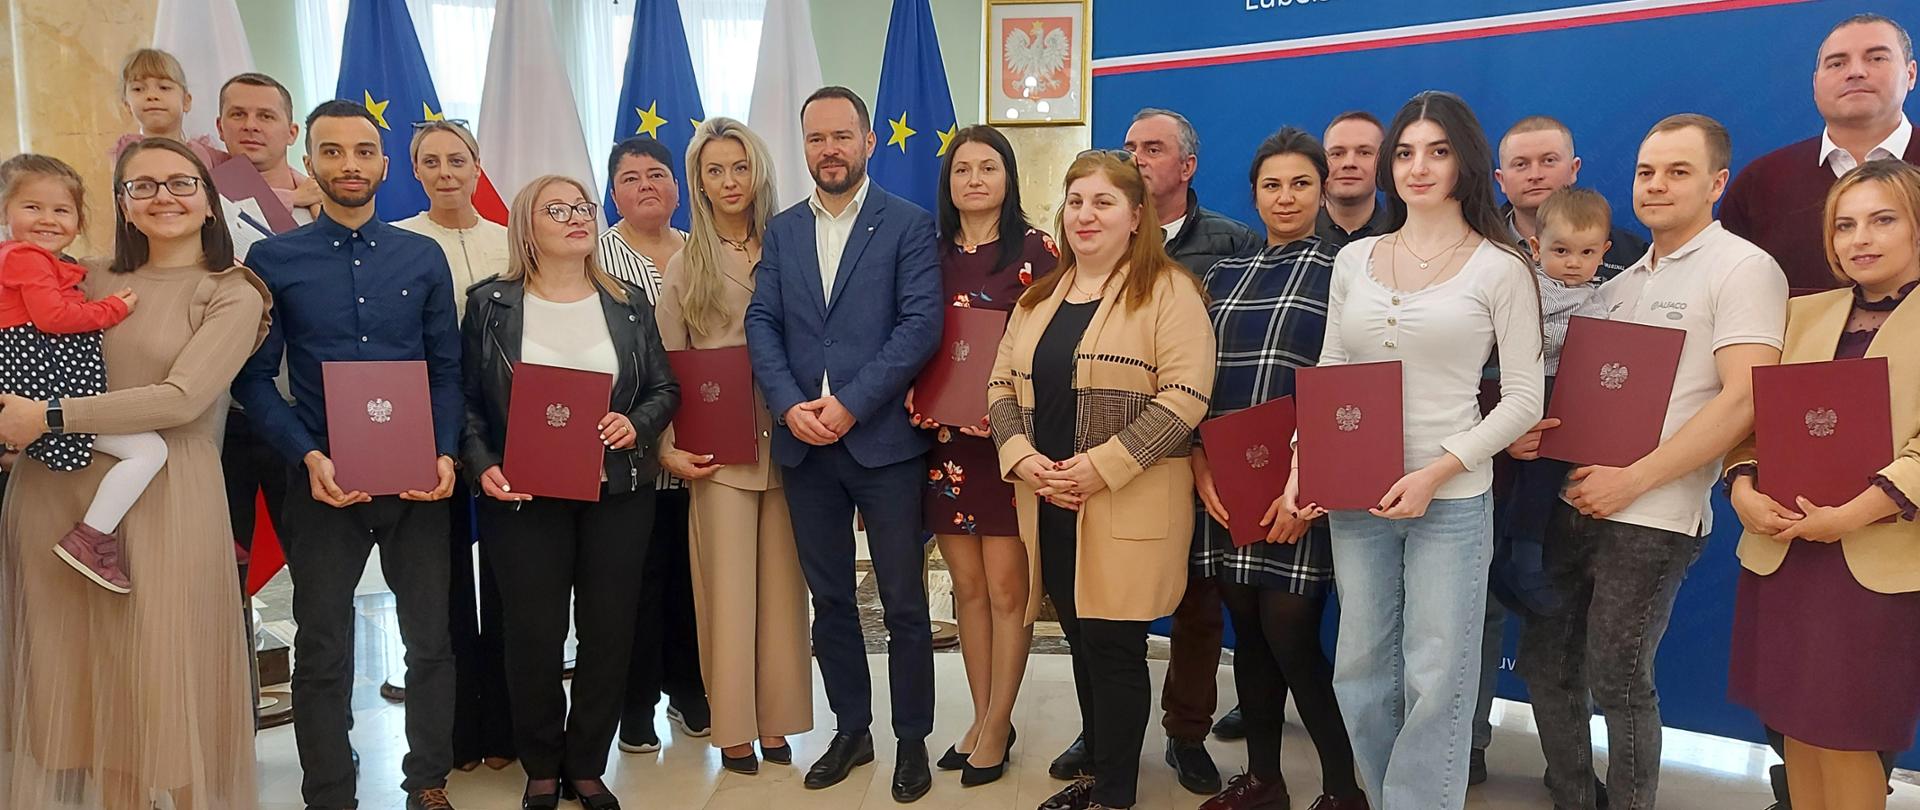 24 osoby otrzymały polskie obywatelstwo